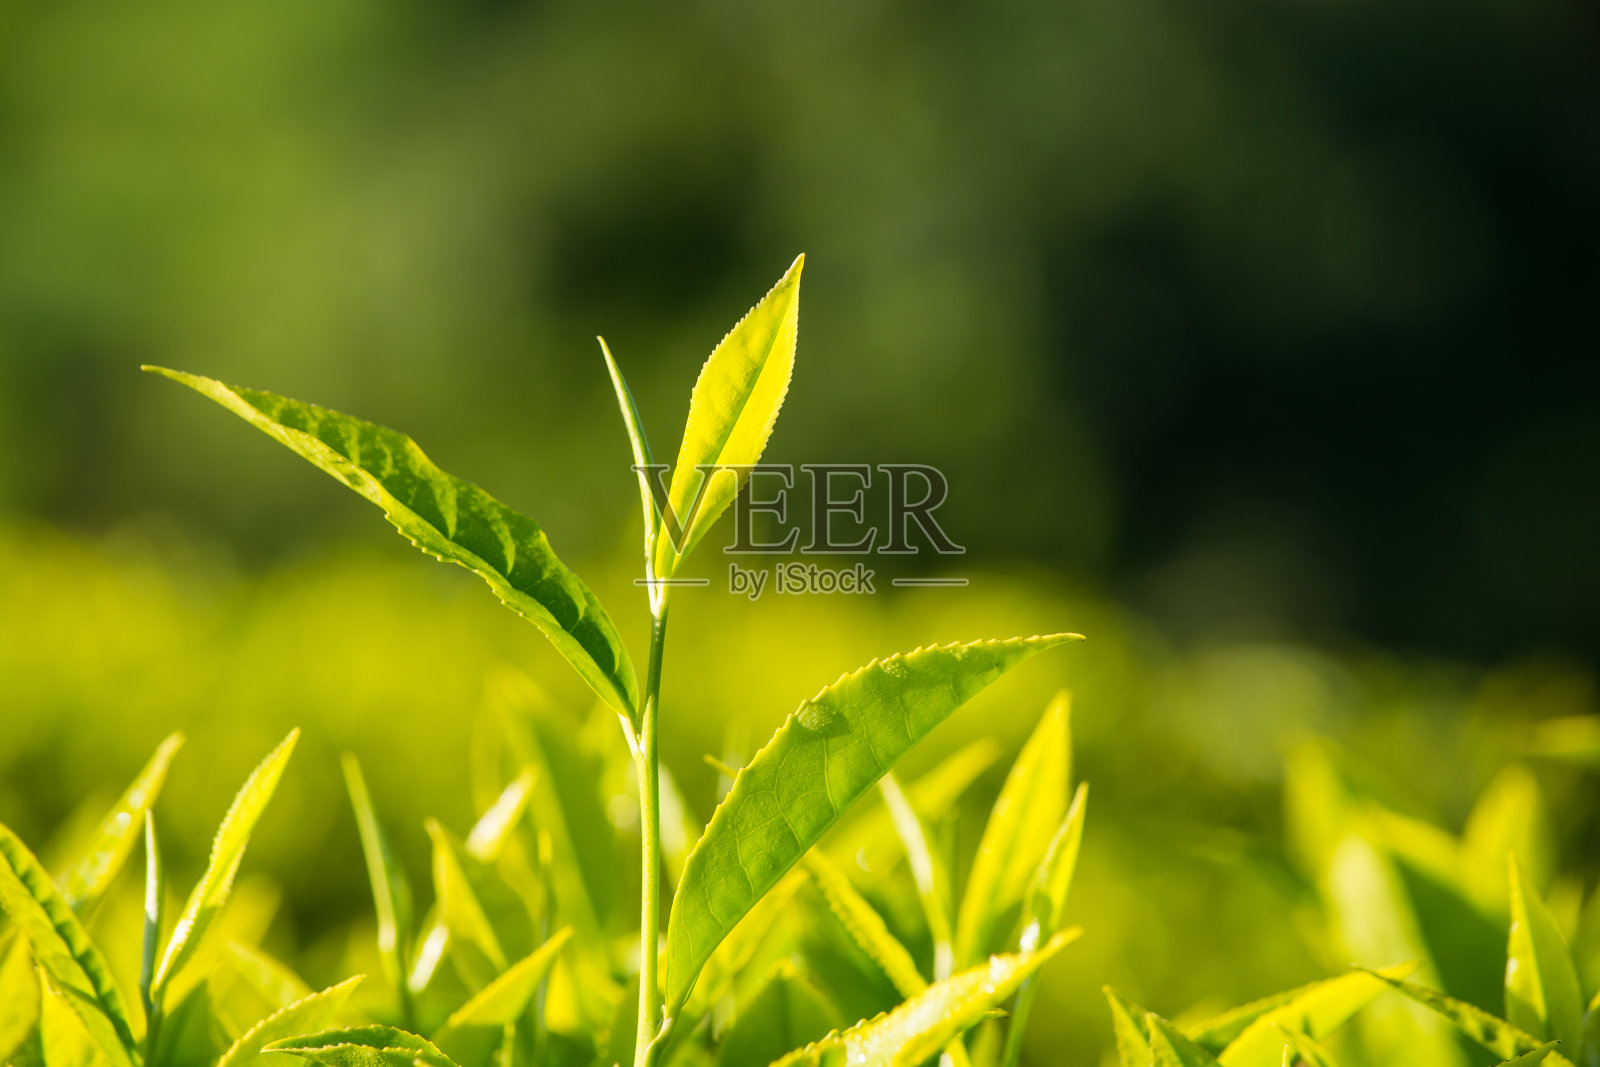 微距拍摄的绿茶叶子照片摄影图片